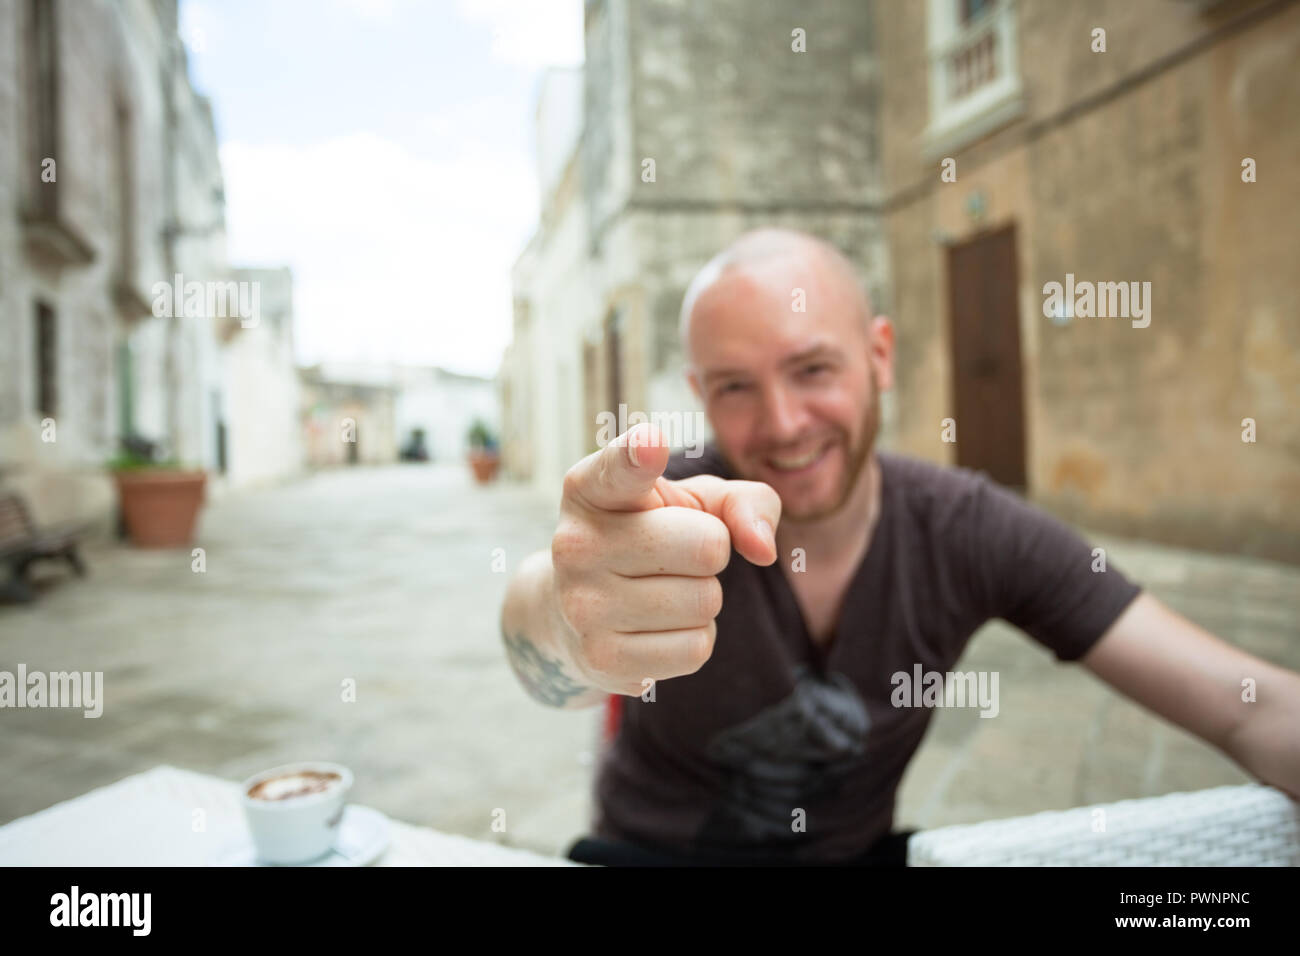 Specchia, Apulien, Italien - ein Mann, der an der Kamera zeigt mit dem Finger Stockfoto